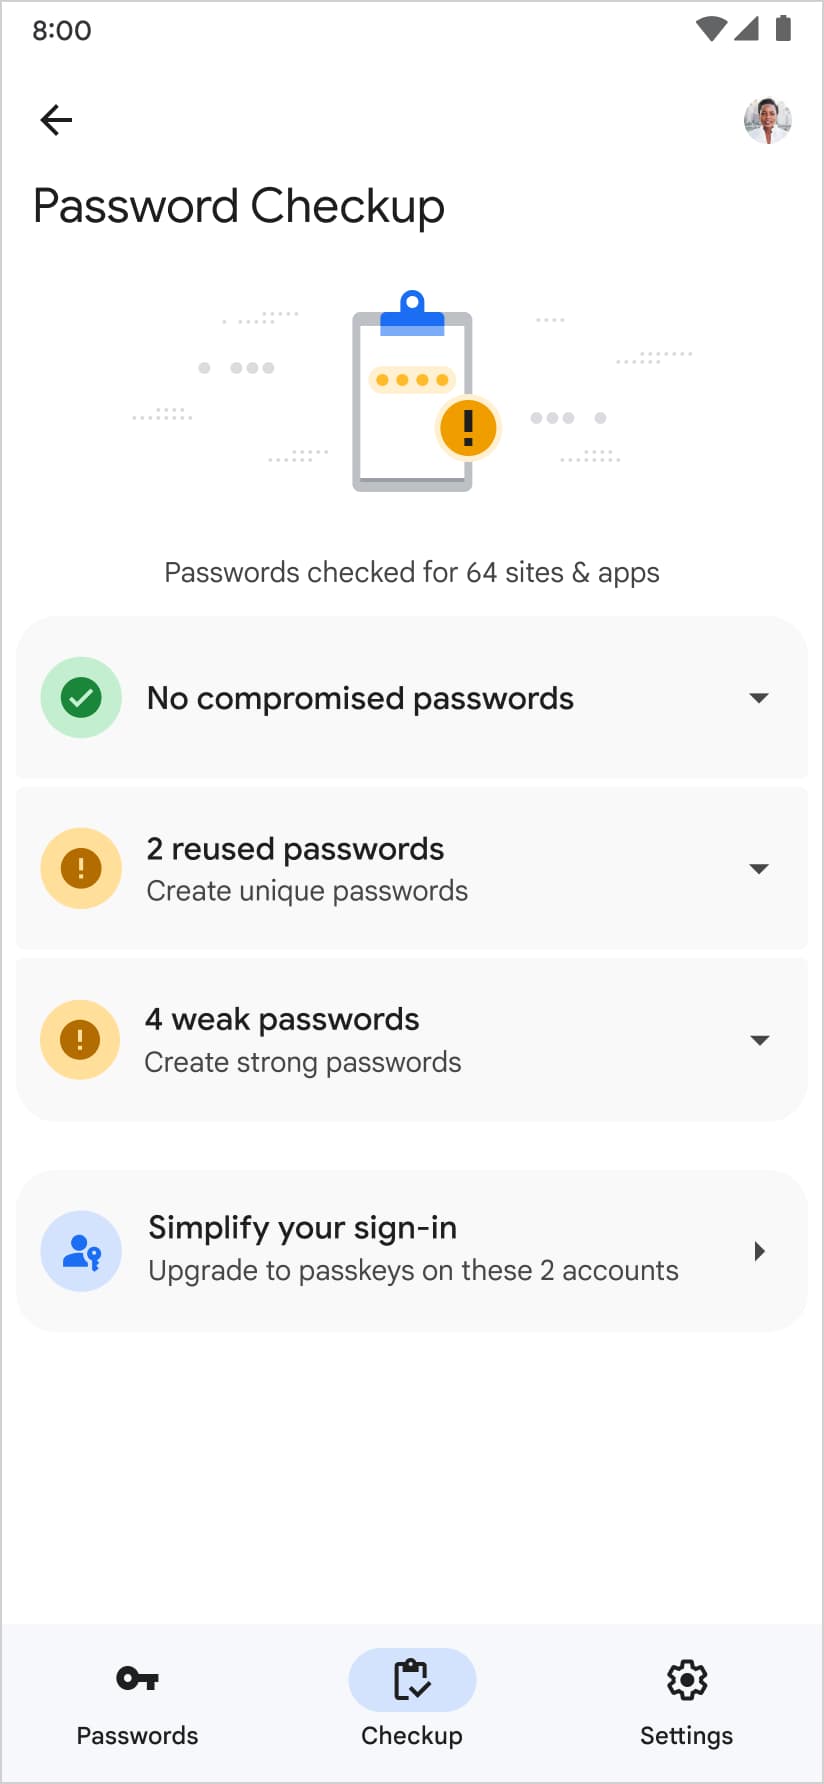 Google パスワード マネージャーでは、パスワード チェックアップ ページでパスキーを作成することも提案されます。